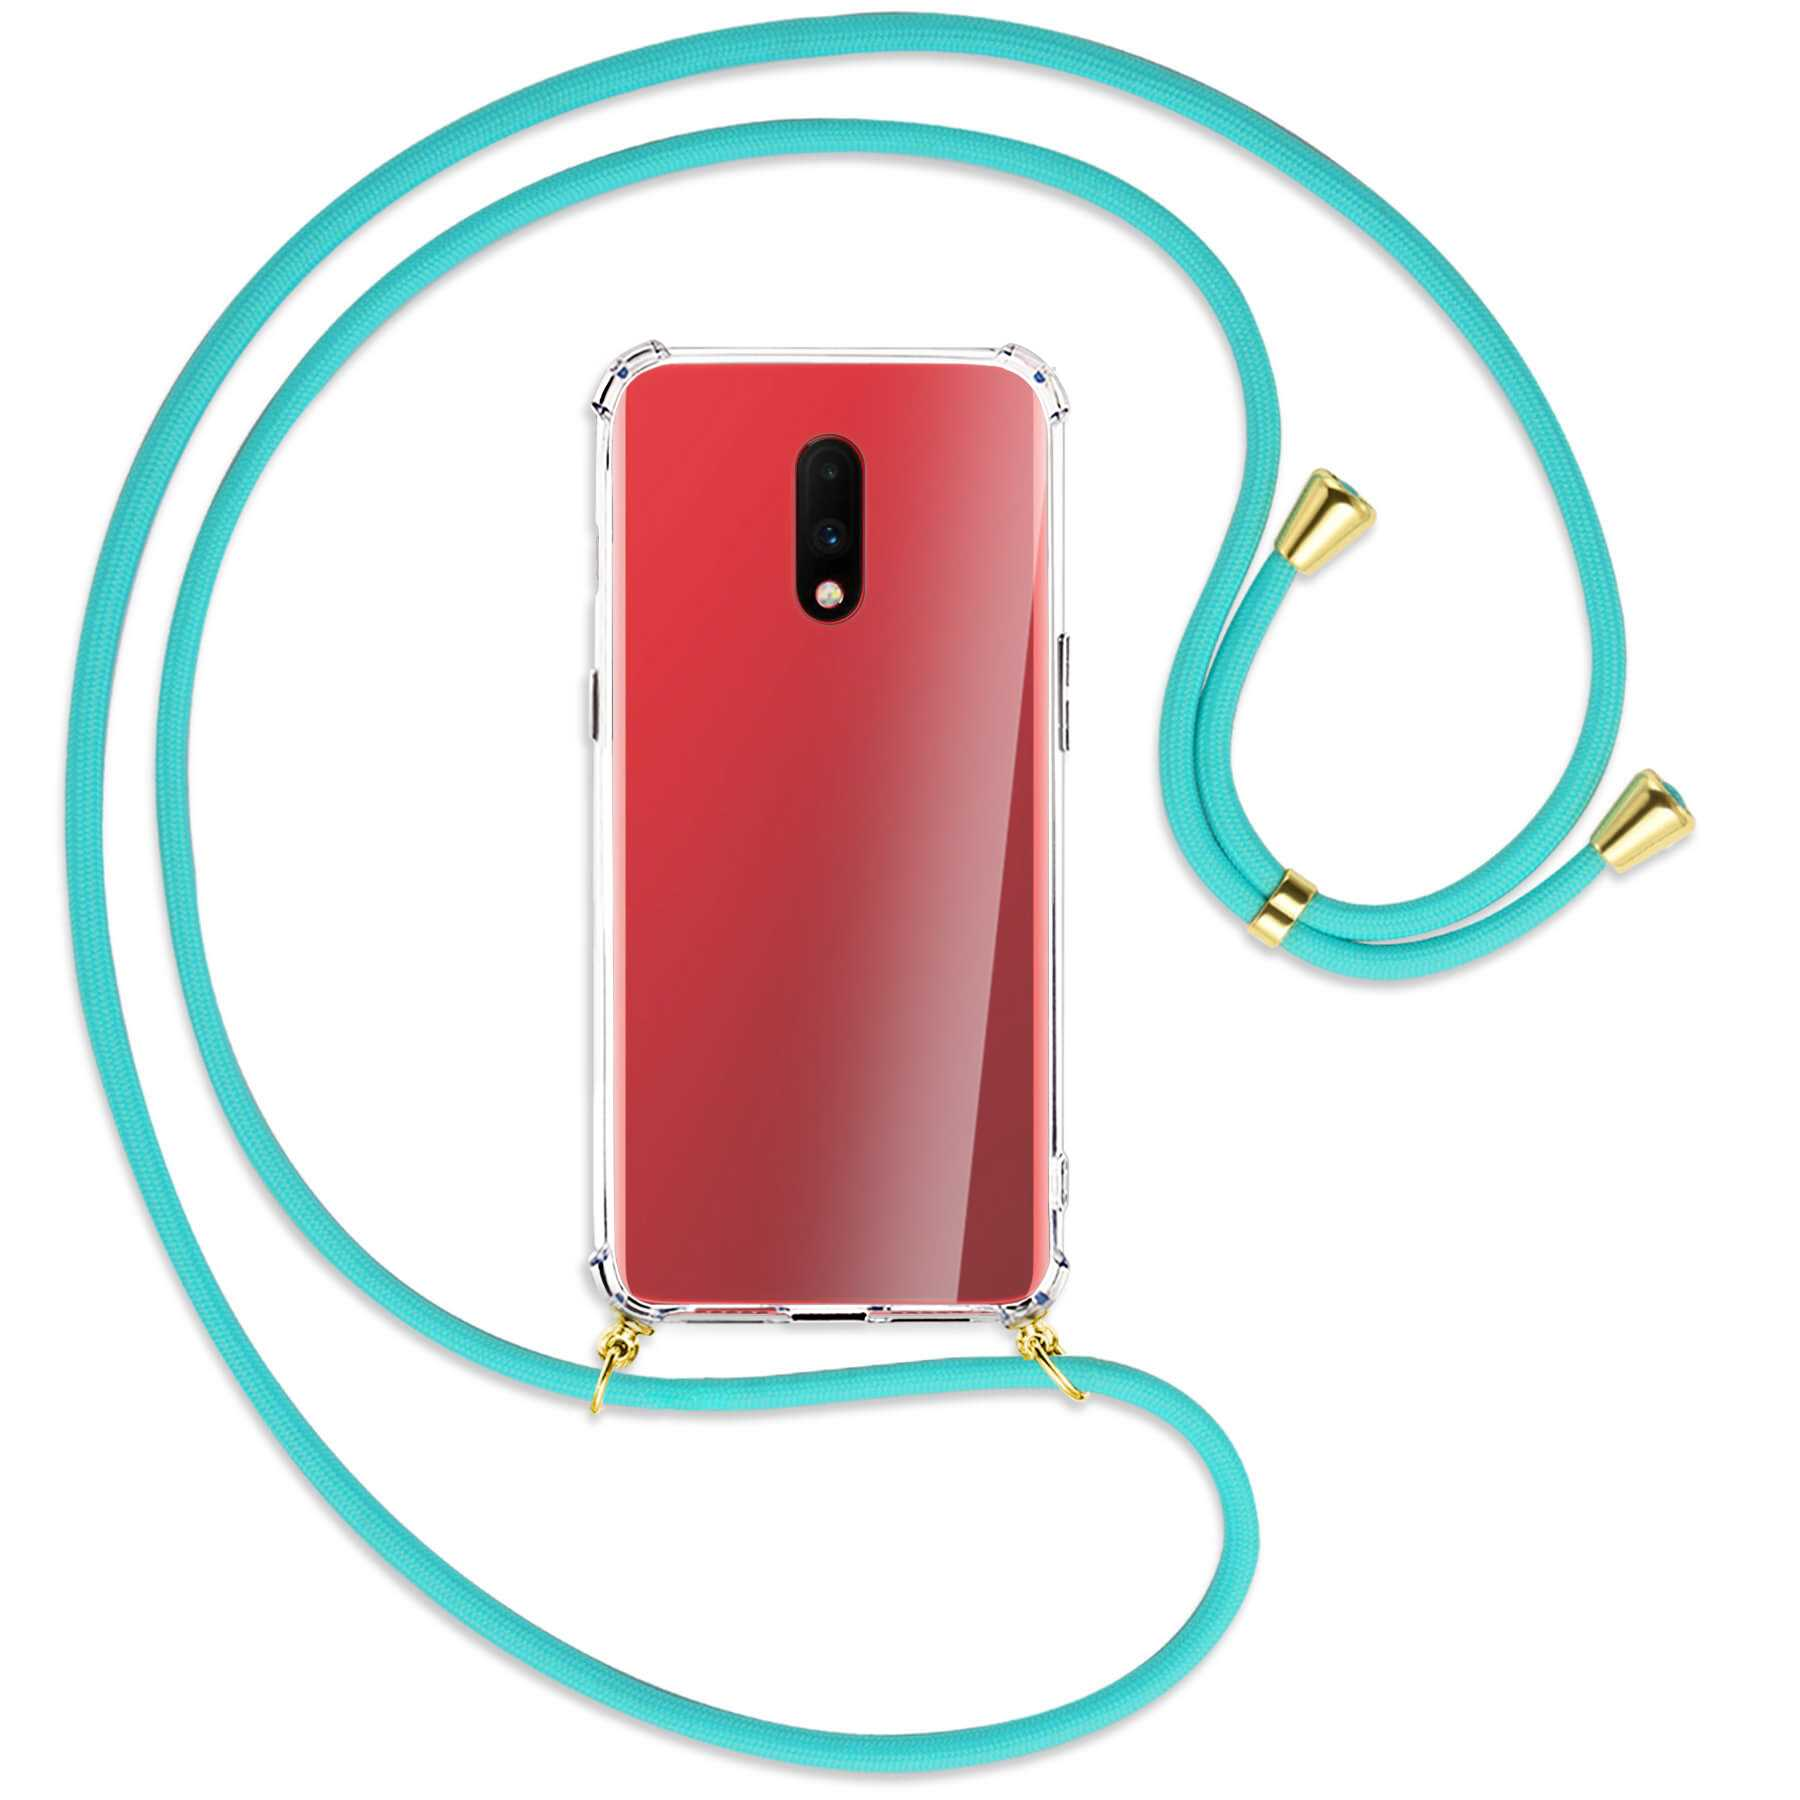 MTB MORE ENERGY OnePlus, 7, mit Türkis Backcover, Gold Kordel, Umhänge-Hülle 